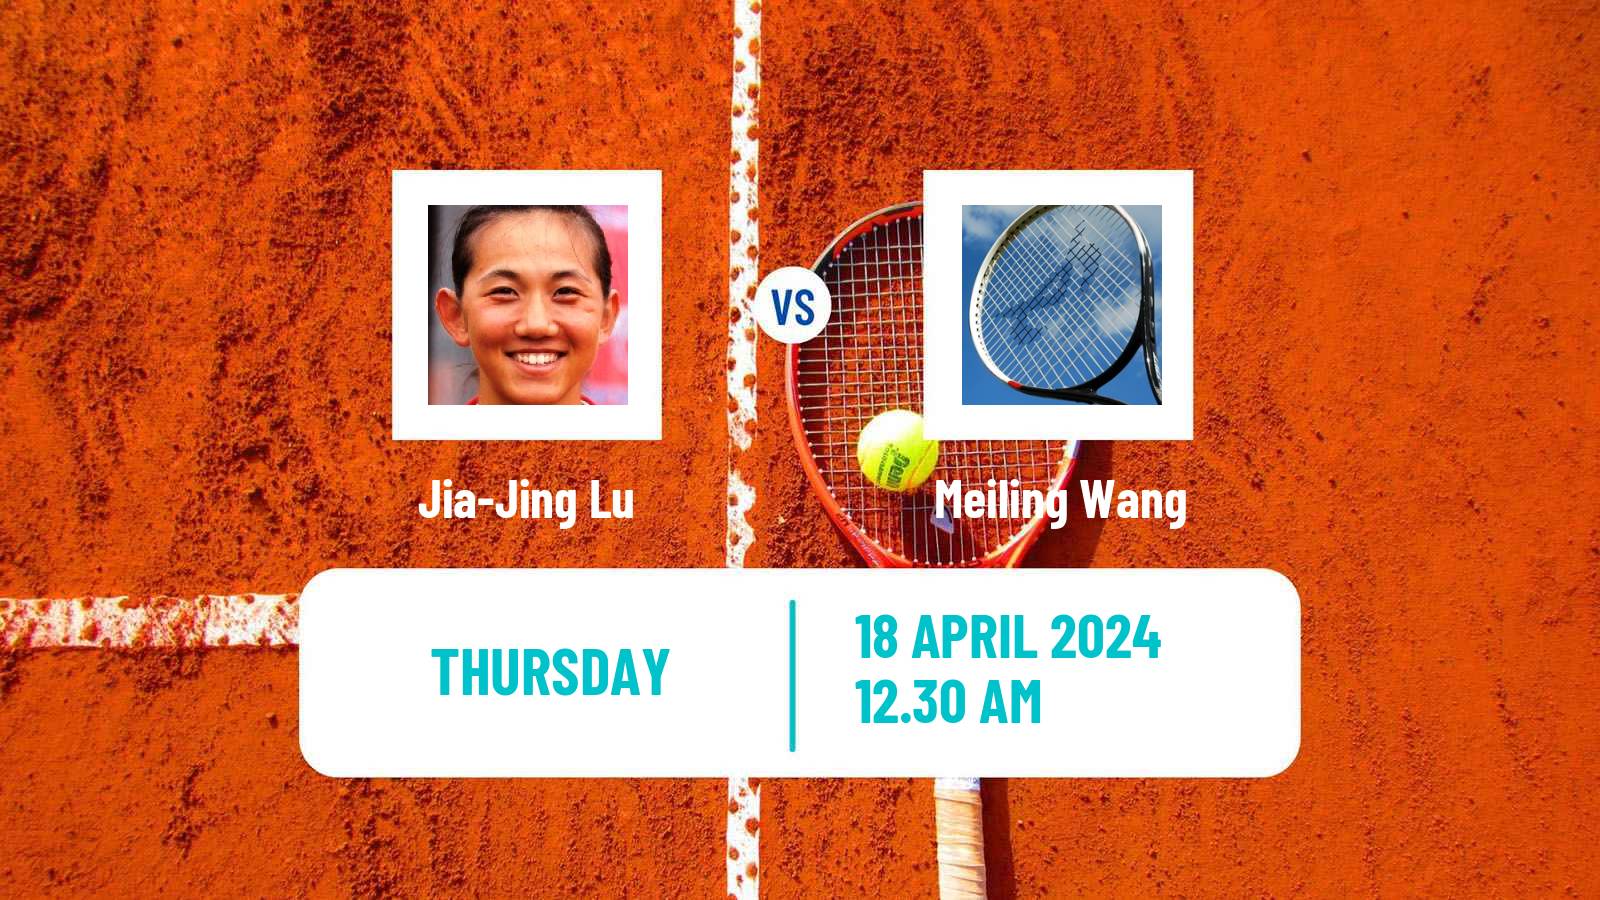 Tennis ITF W50 Shenzhen 2 Women Jia-Jing Lu - Meiling Wang